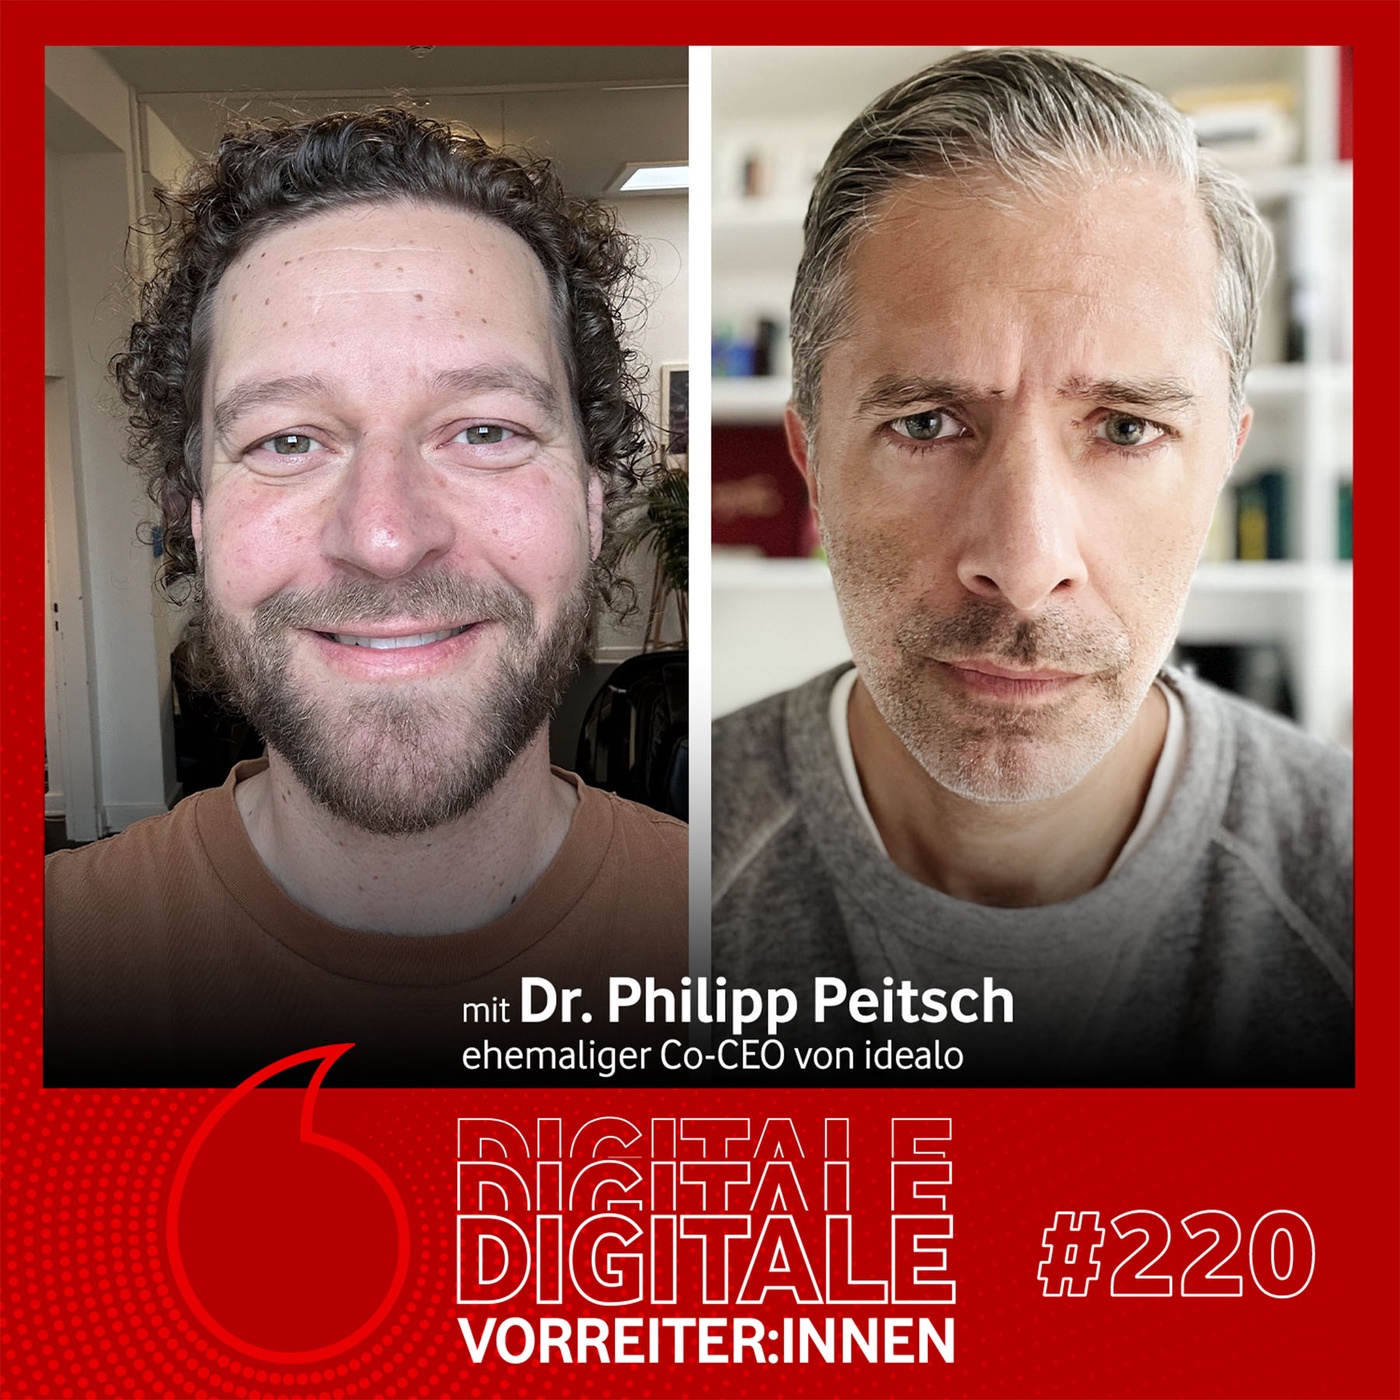 Auf der Suche nach dem besten Preis - mit Dr. Philipp Peitsch ehemaliger Co-CEO von Idealo